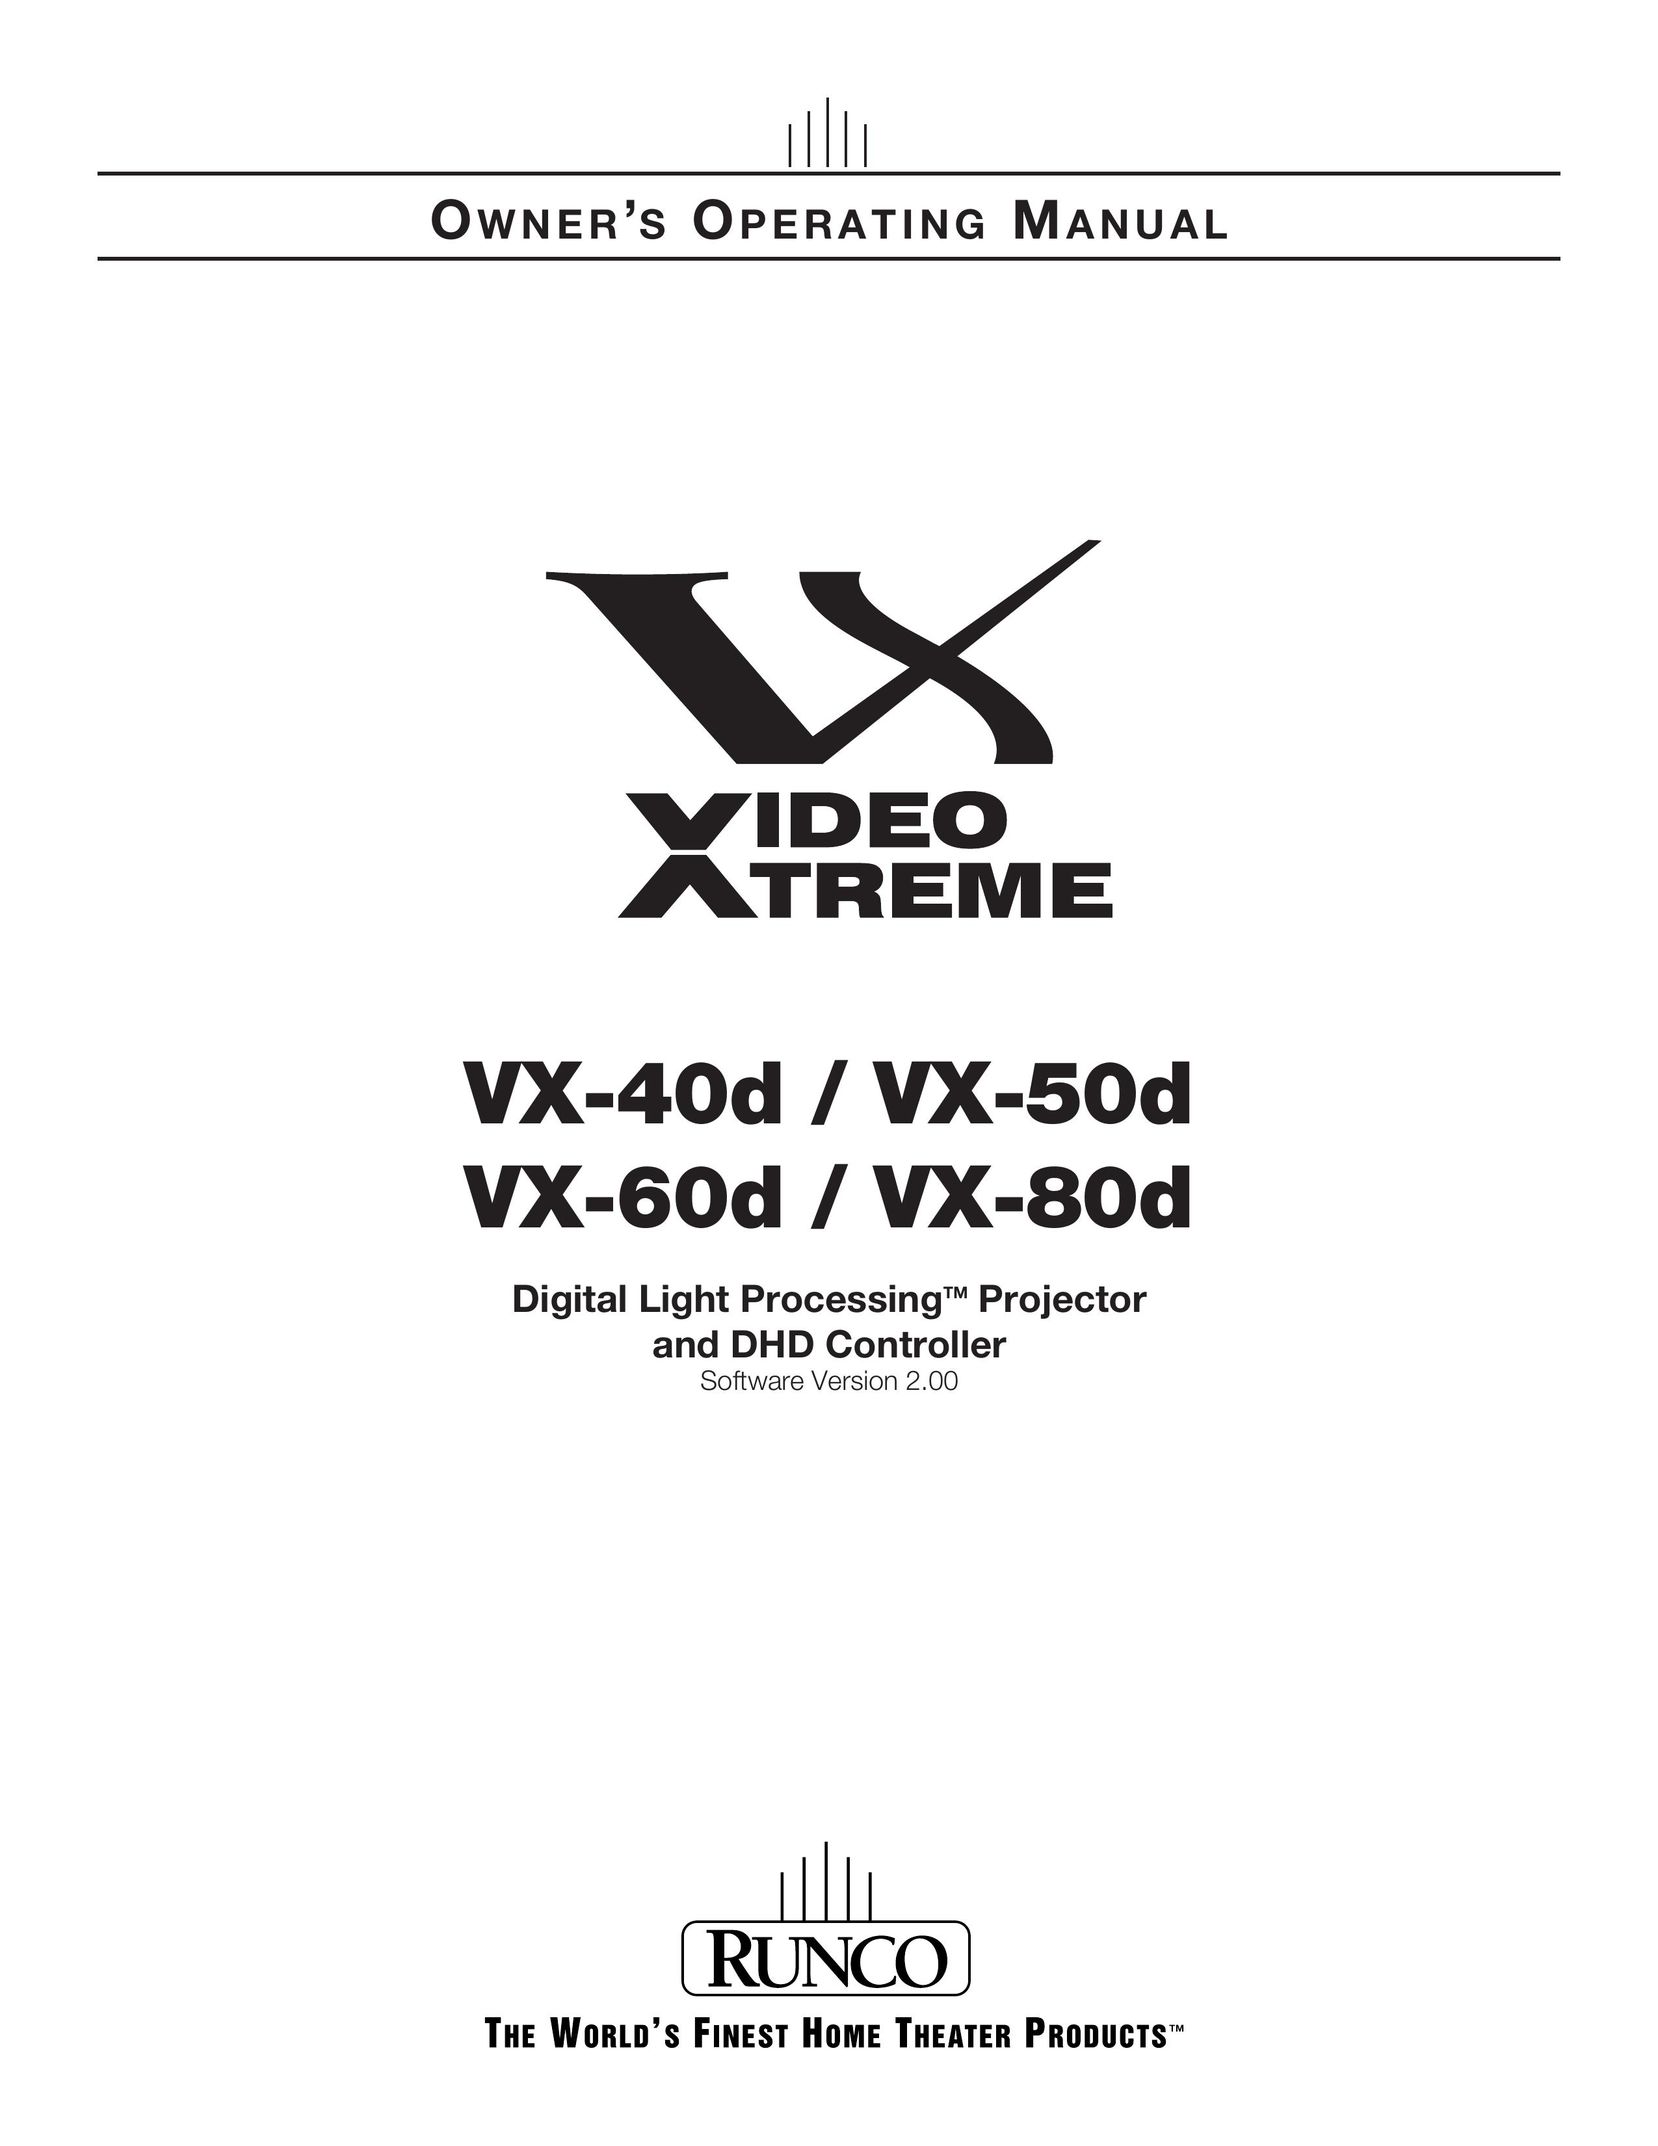 Runco VX-40d Projector User Manual